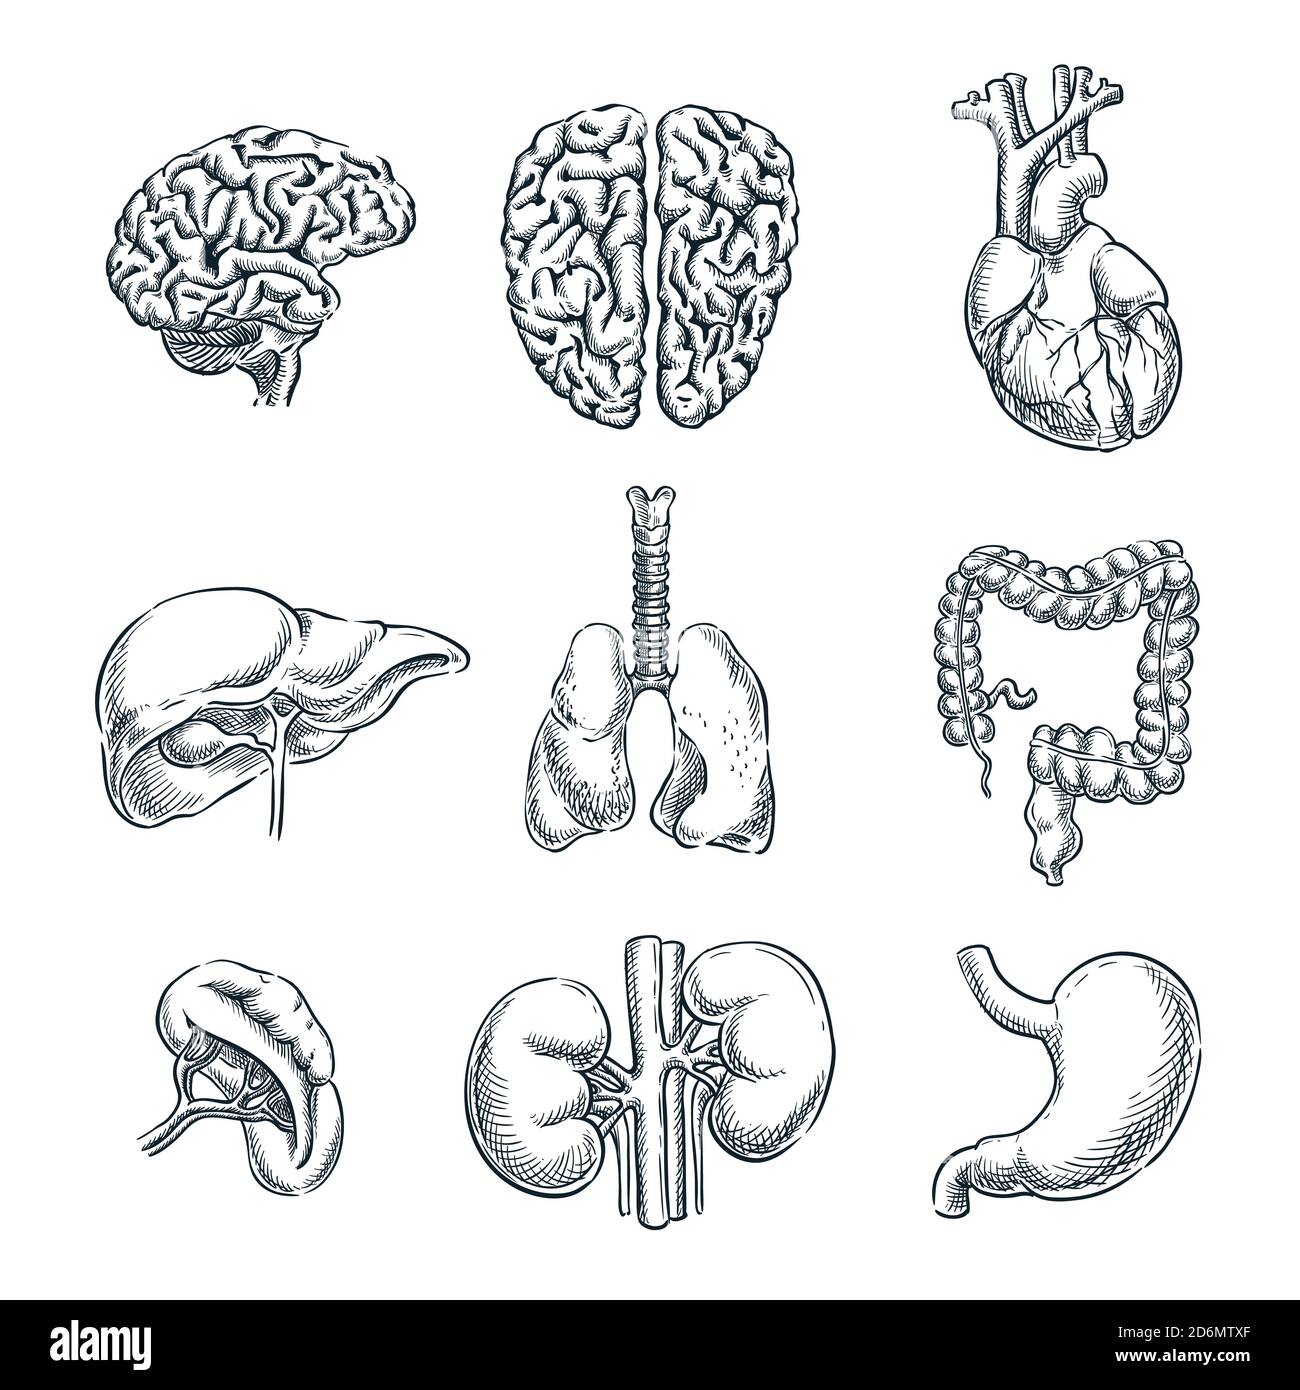 Organes internes humains. Illustration isolée d'esquisse vectorielle. Jeu de symboles anatomiques pour les caniche dessinés à la main. Illustration de Vecteur